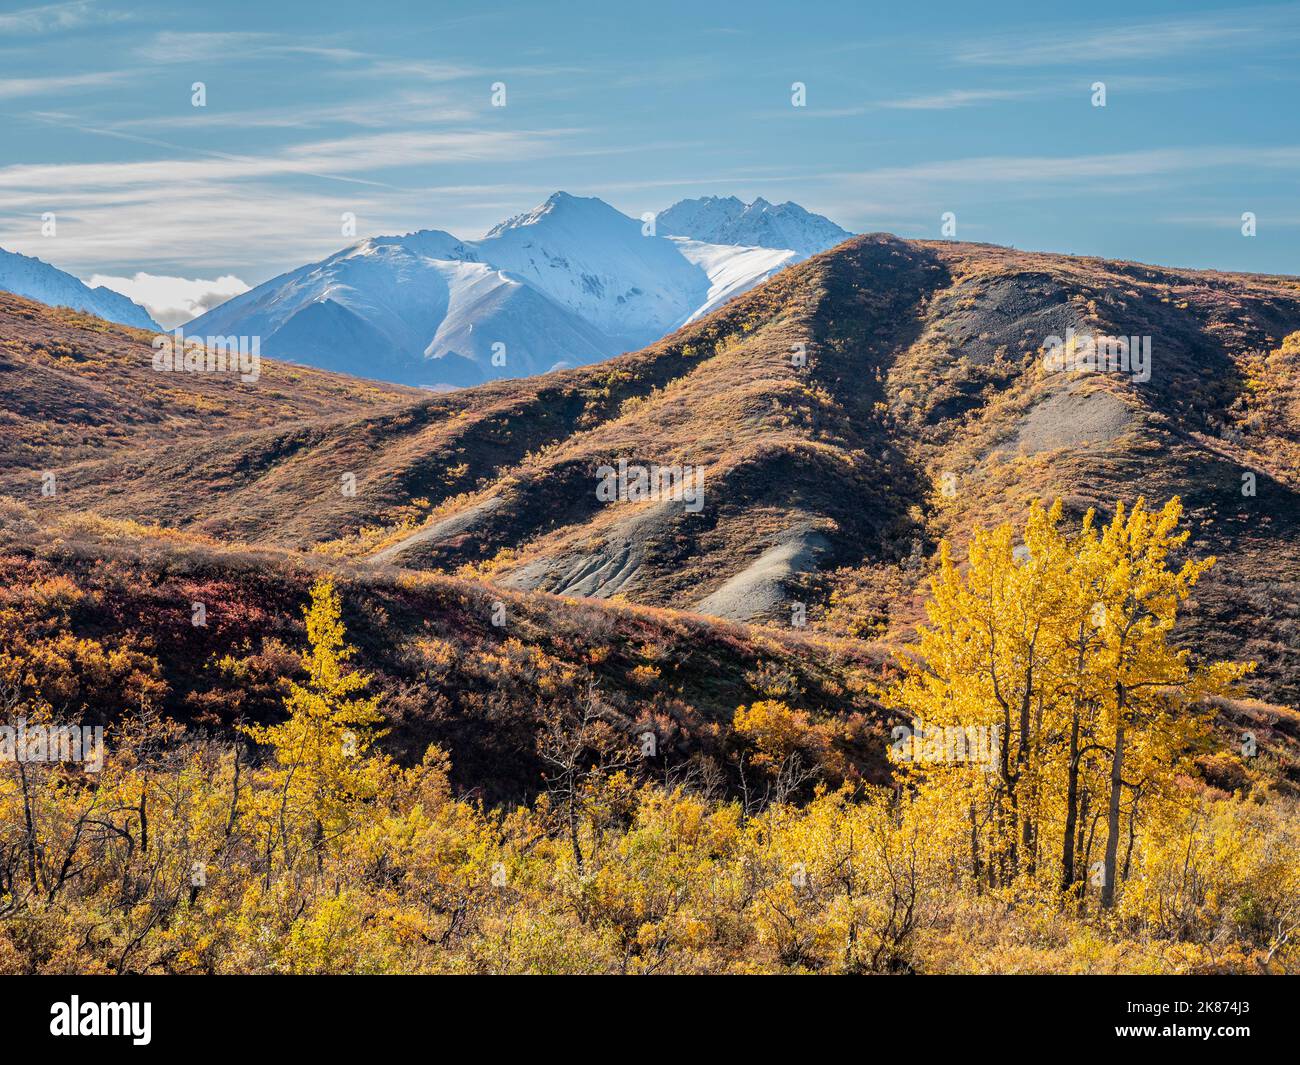 Schneebedeckte Berge und Herbstfärbung zwischen den Sträuchern und Bäumen, Denali National Park, Alaska, Vereinigte Staaten von Amerika, Nordamerika Stockfoto